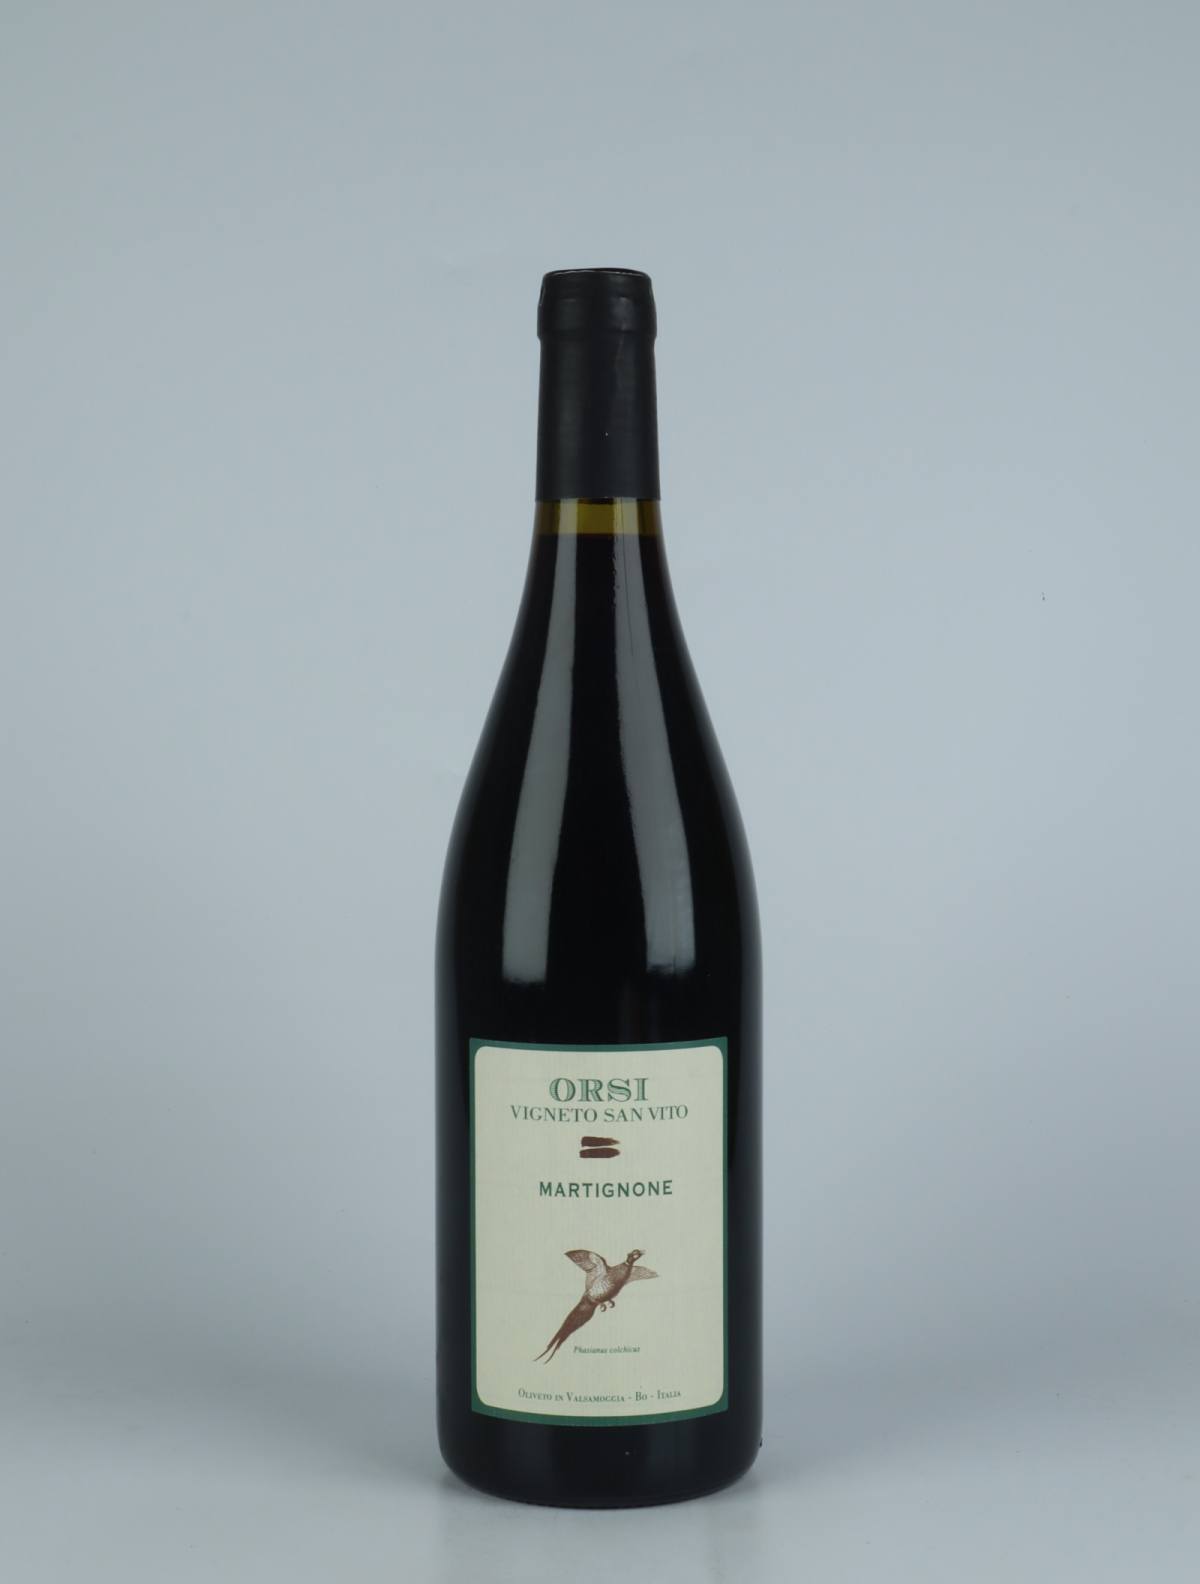 A bottle 2020 Martignone Red wine from Orsi - San Vito, Emilia-Romagna in Italy